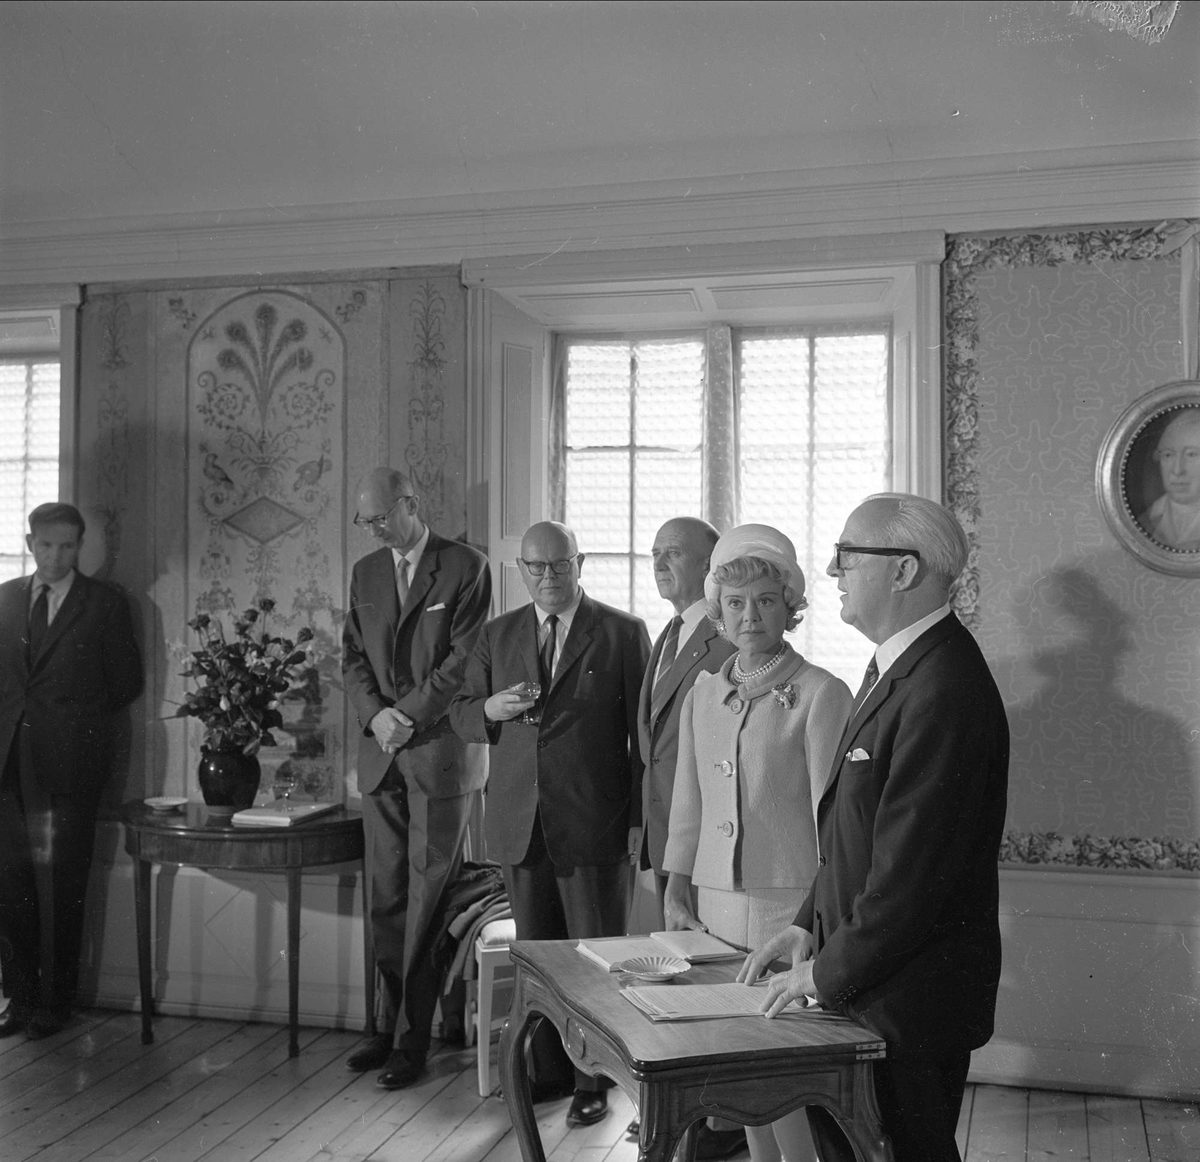 Henie-Onstad, kultursentrum, arkitektkonkurranse, gruppe herrer med Sonja Henie, prisutdeling, Høvik, Bærum, 15.06.1963.